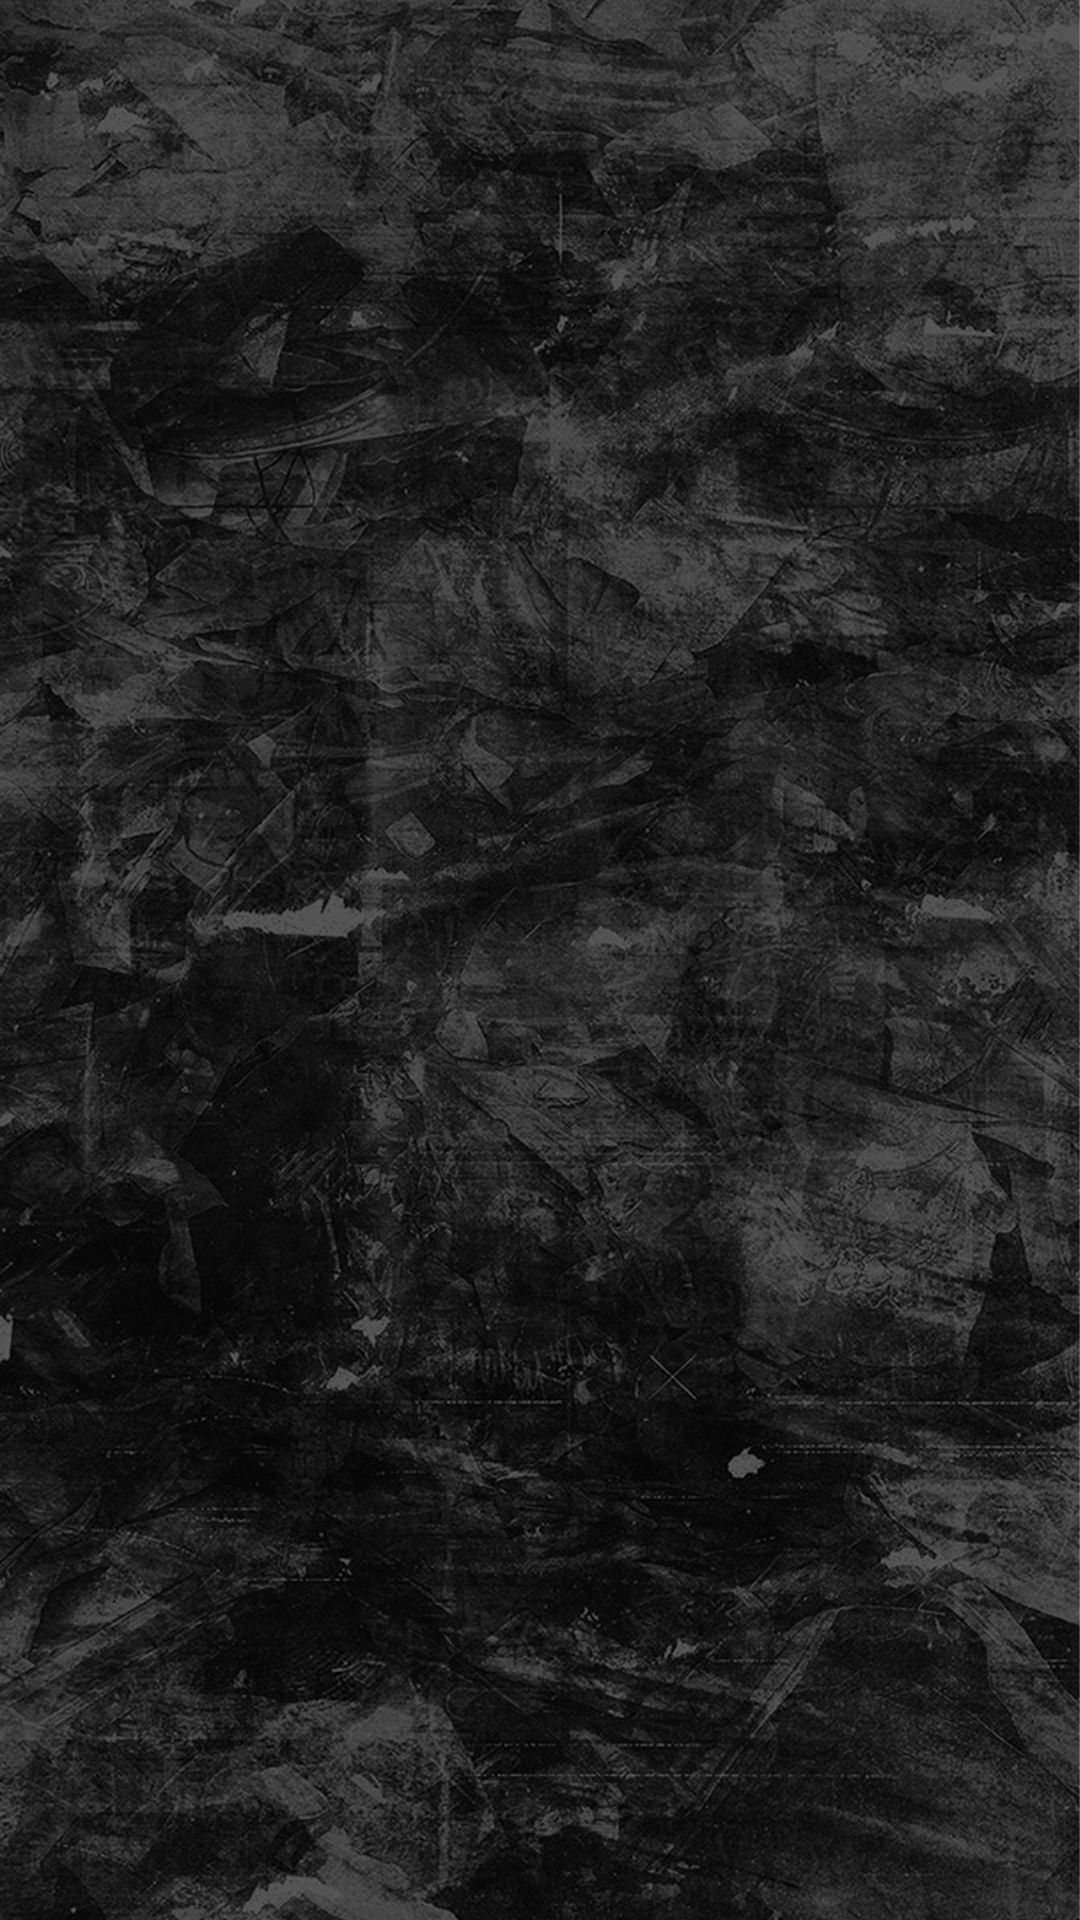 Dark Abstract Wallpaper Home Screen em 2020. Cartazes de design gráfico, Ilustração com caveiras, Design de cartazes